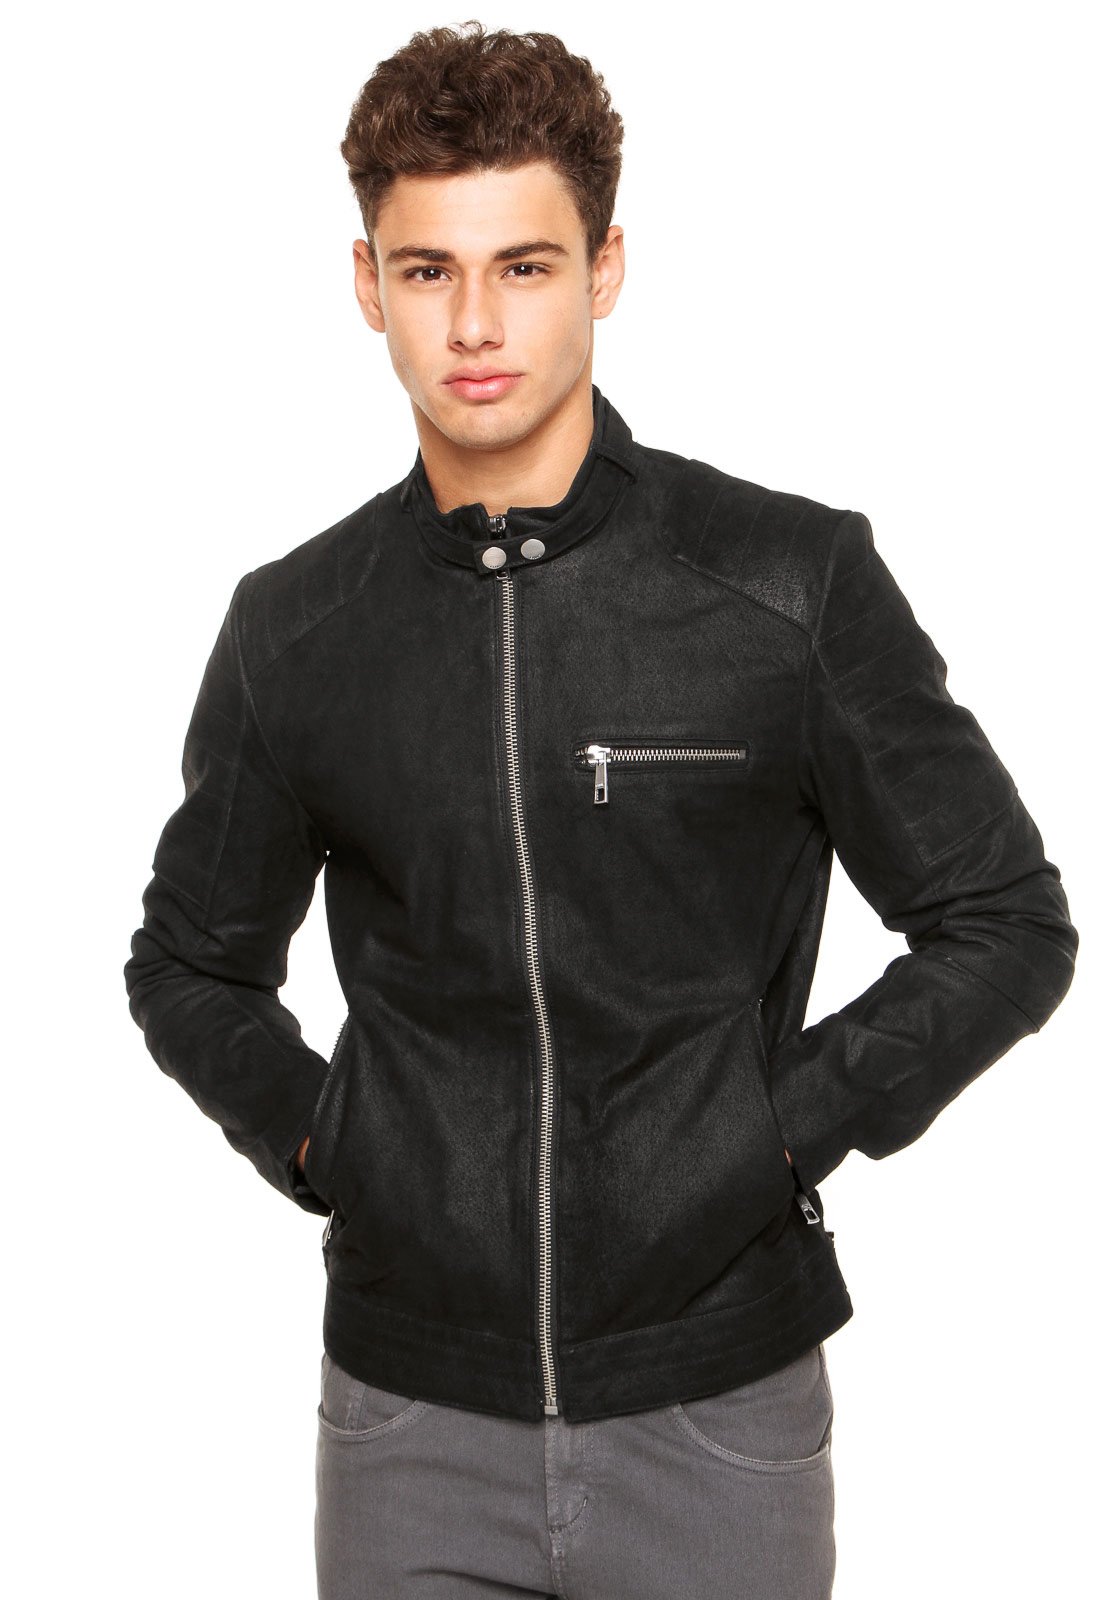 jaqueta de couro ellus masculina preço